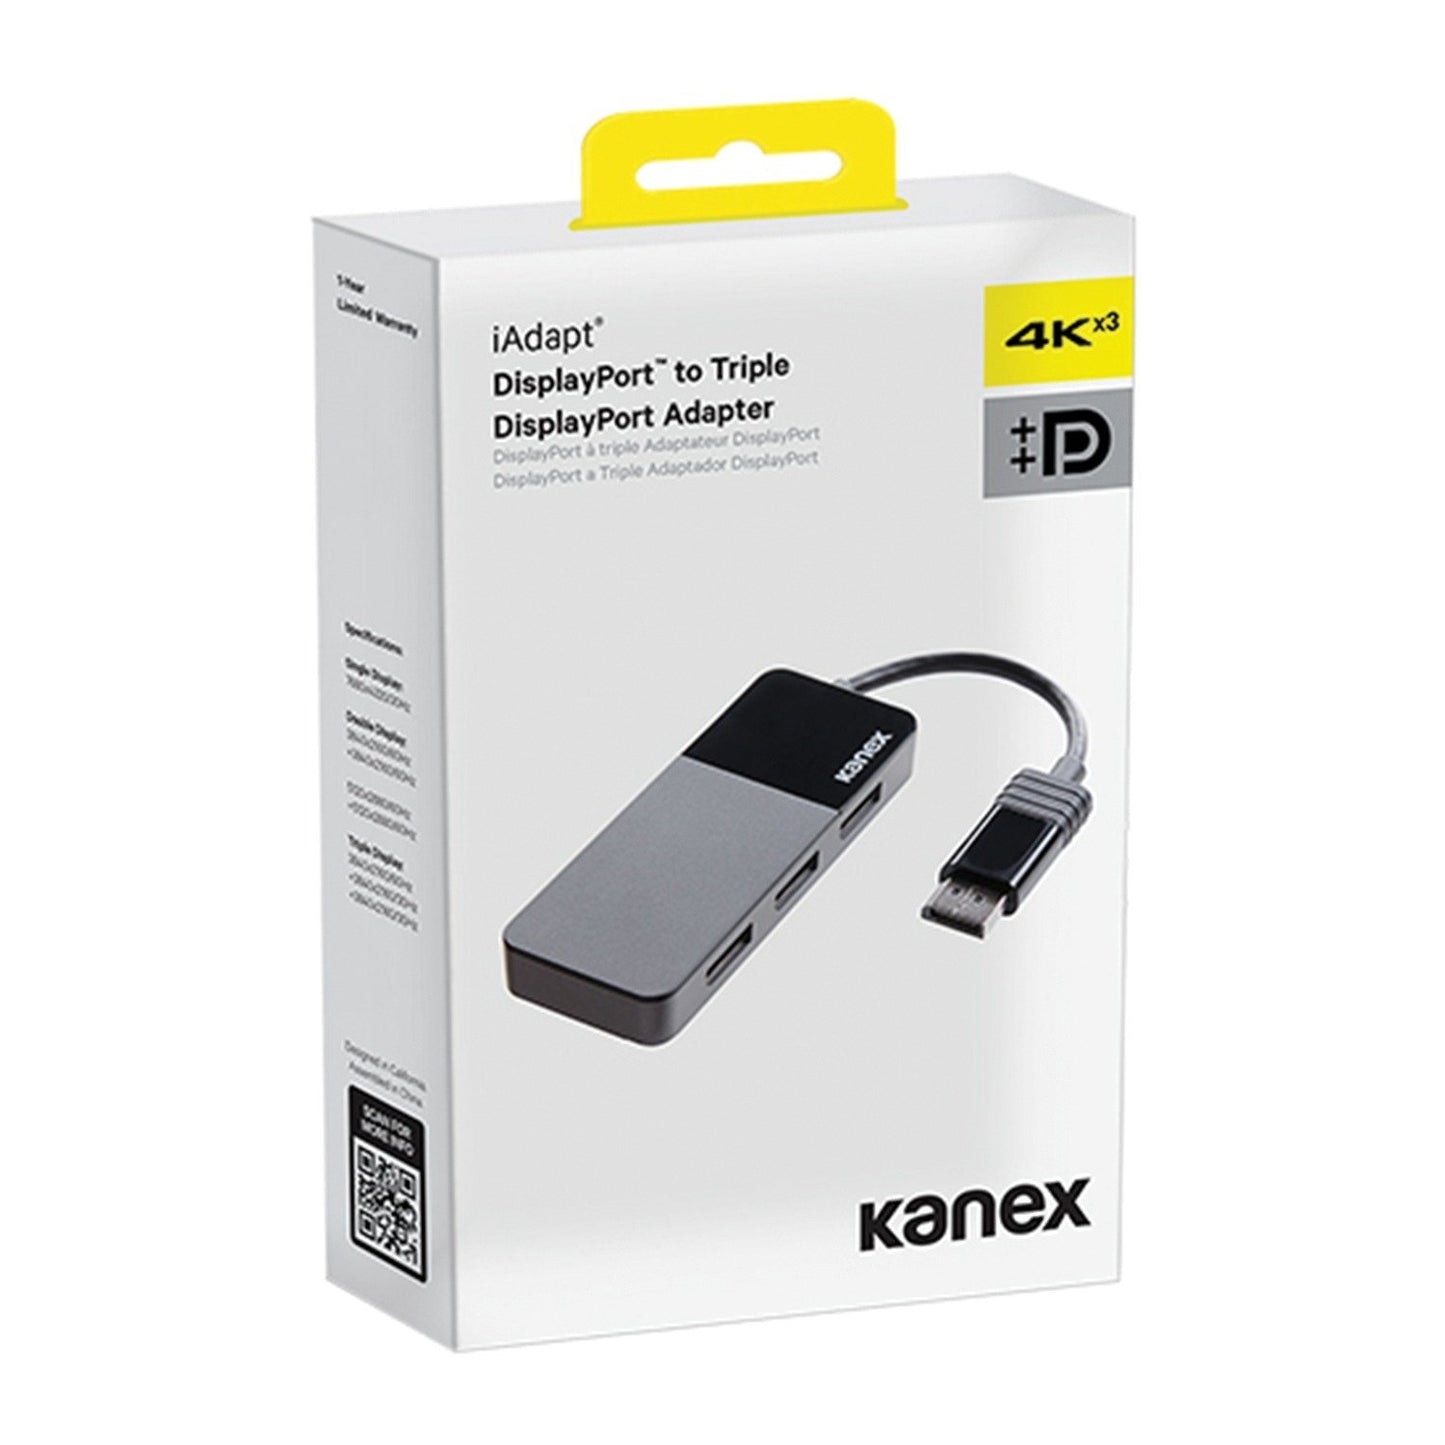 Kanex K172-1283-DP3X iAdapt DisplayPort to Triple DisplayPort Adapter